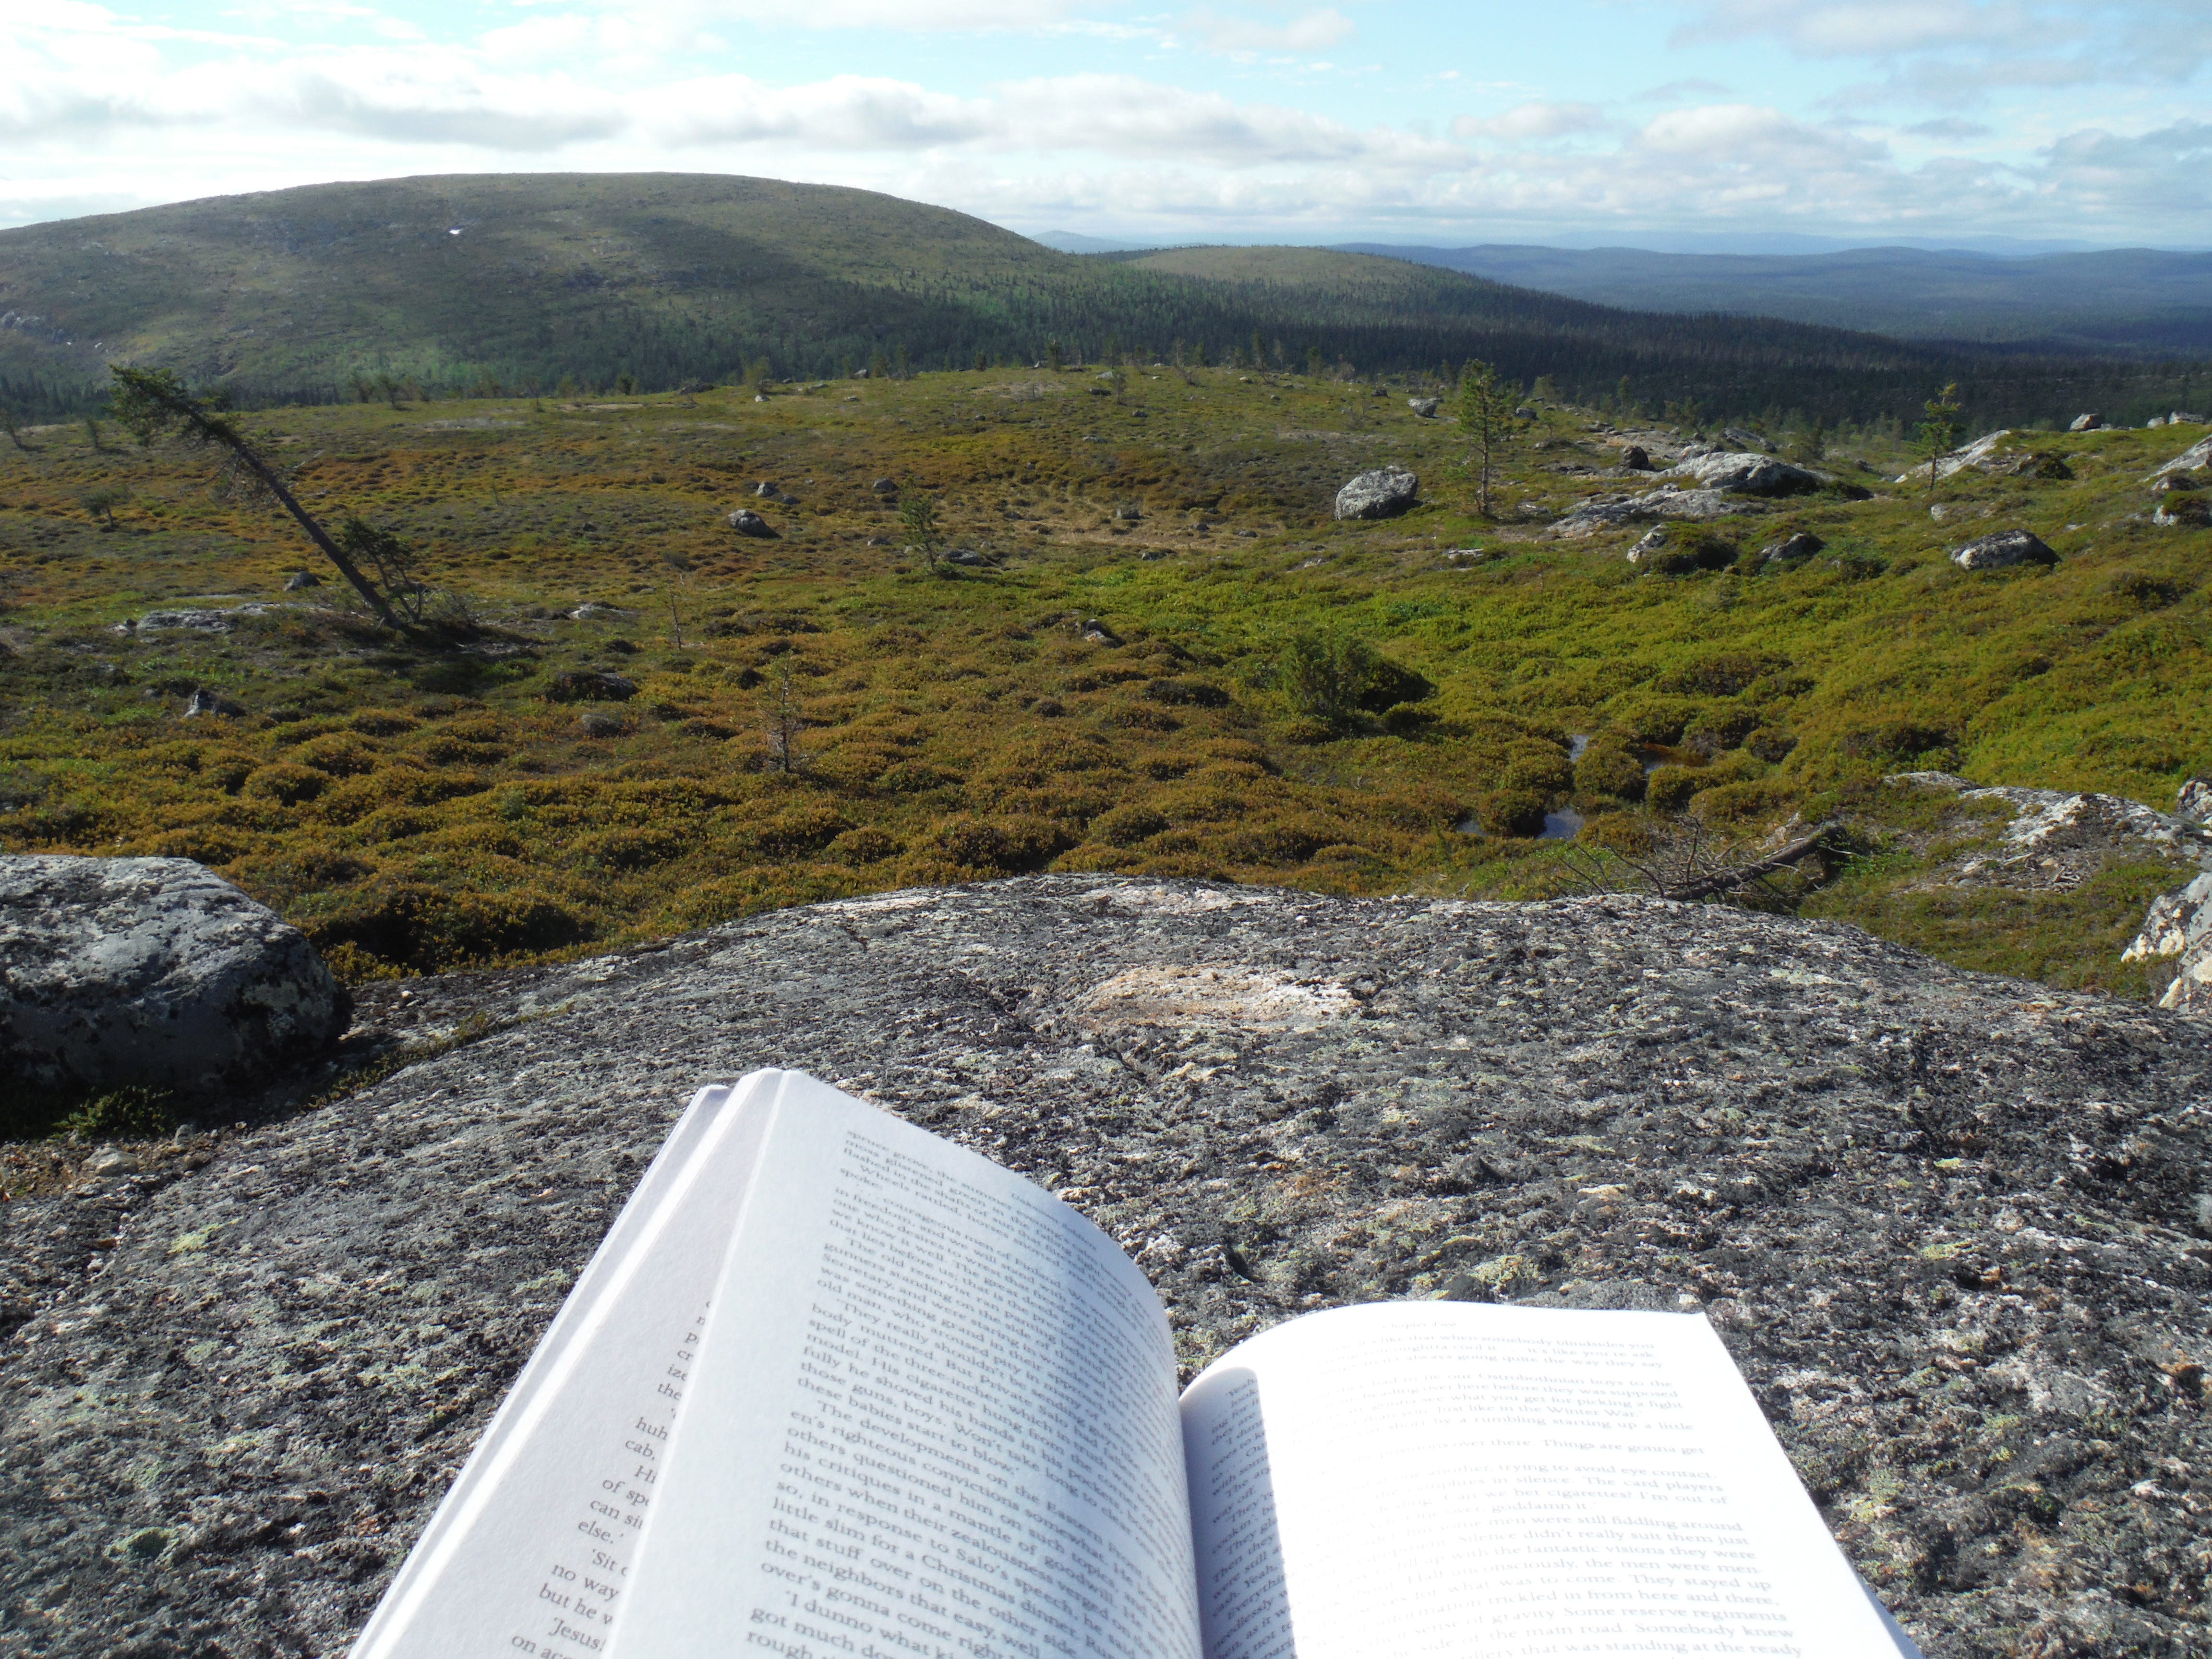 Reading atop my first fjäll peak at Tsarmitunturi